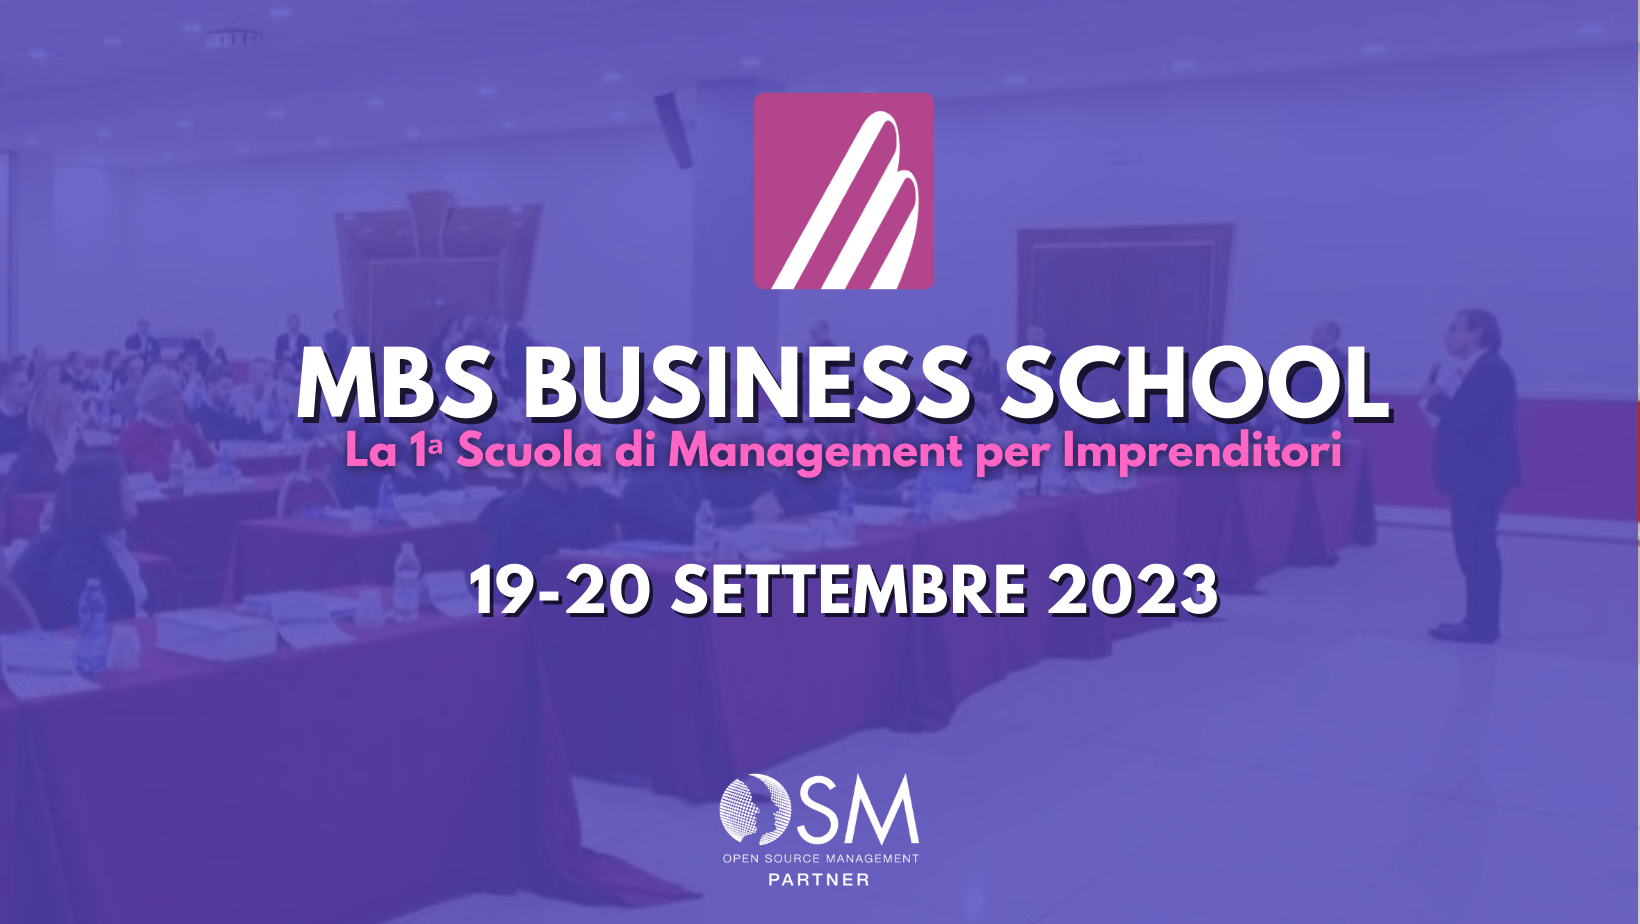 MBS Business School